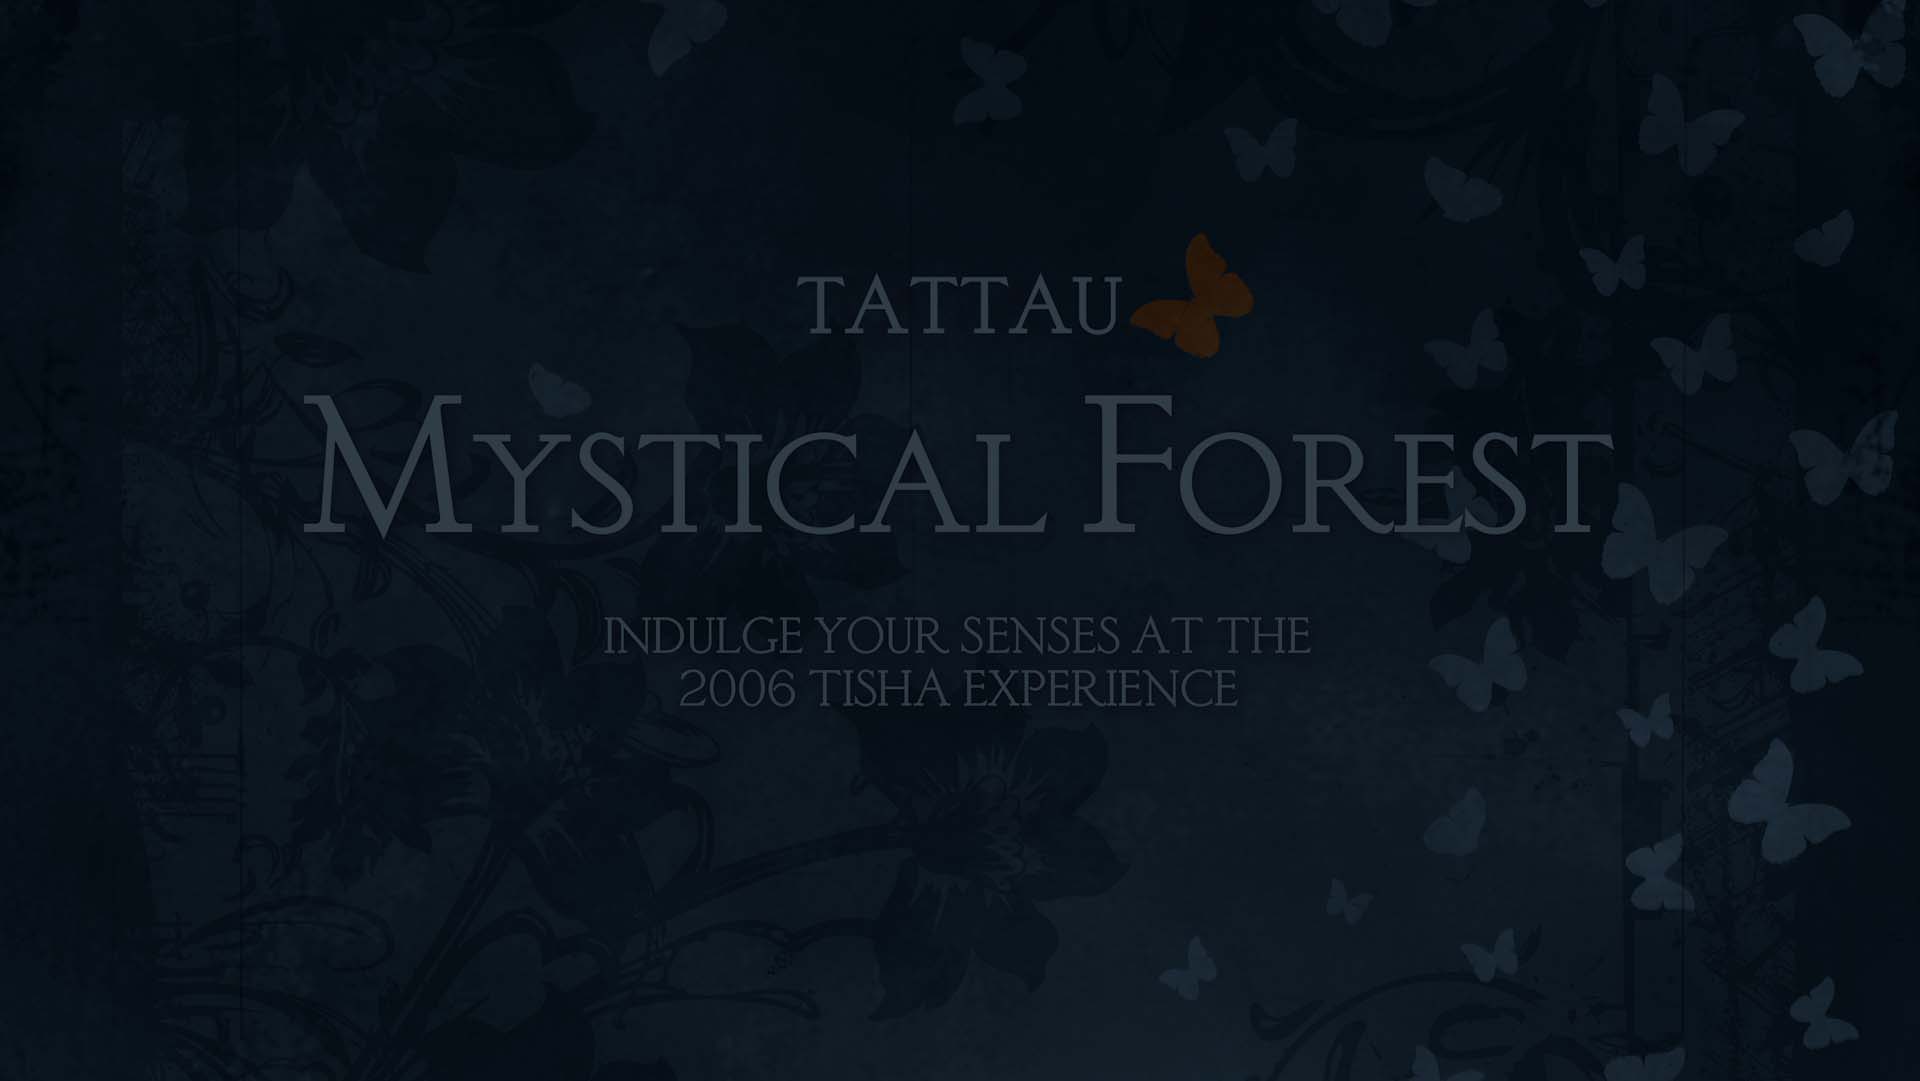 Tattau Mystical Forest